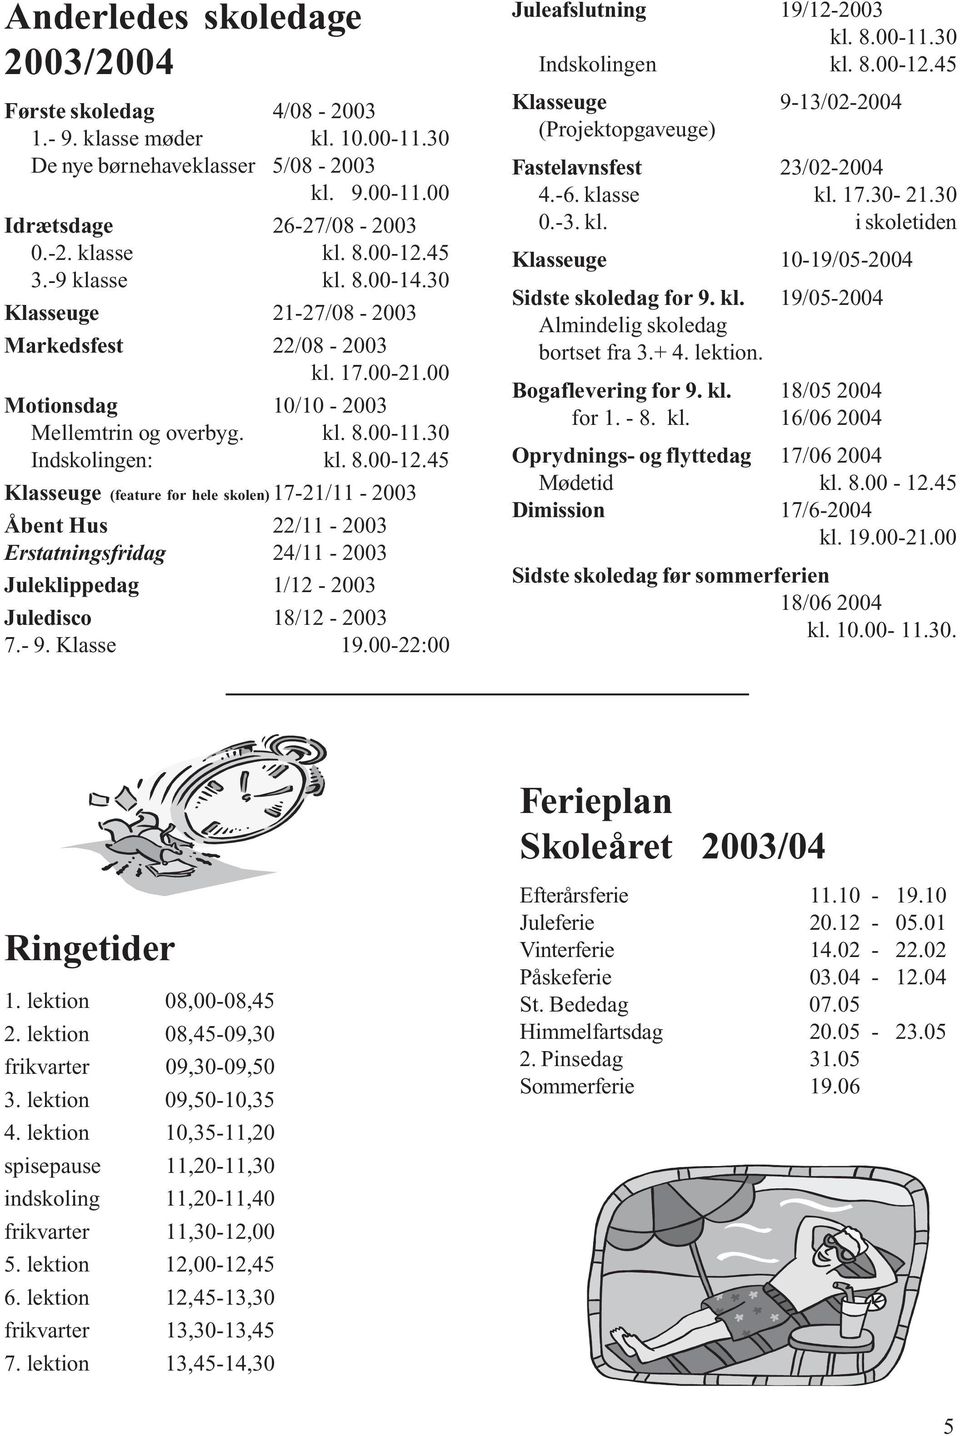 45 Klasseuge (feature for hele skolen) 17-21/11-2003 Åbent Hus 22/11-2003 Erstatningsfridag 24/11-2003 Juleklippedag 1/12-2003 Juledisco 18/12-2003 7.- 9. Klasse 19.